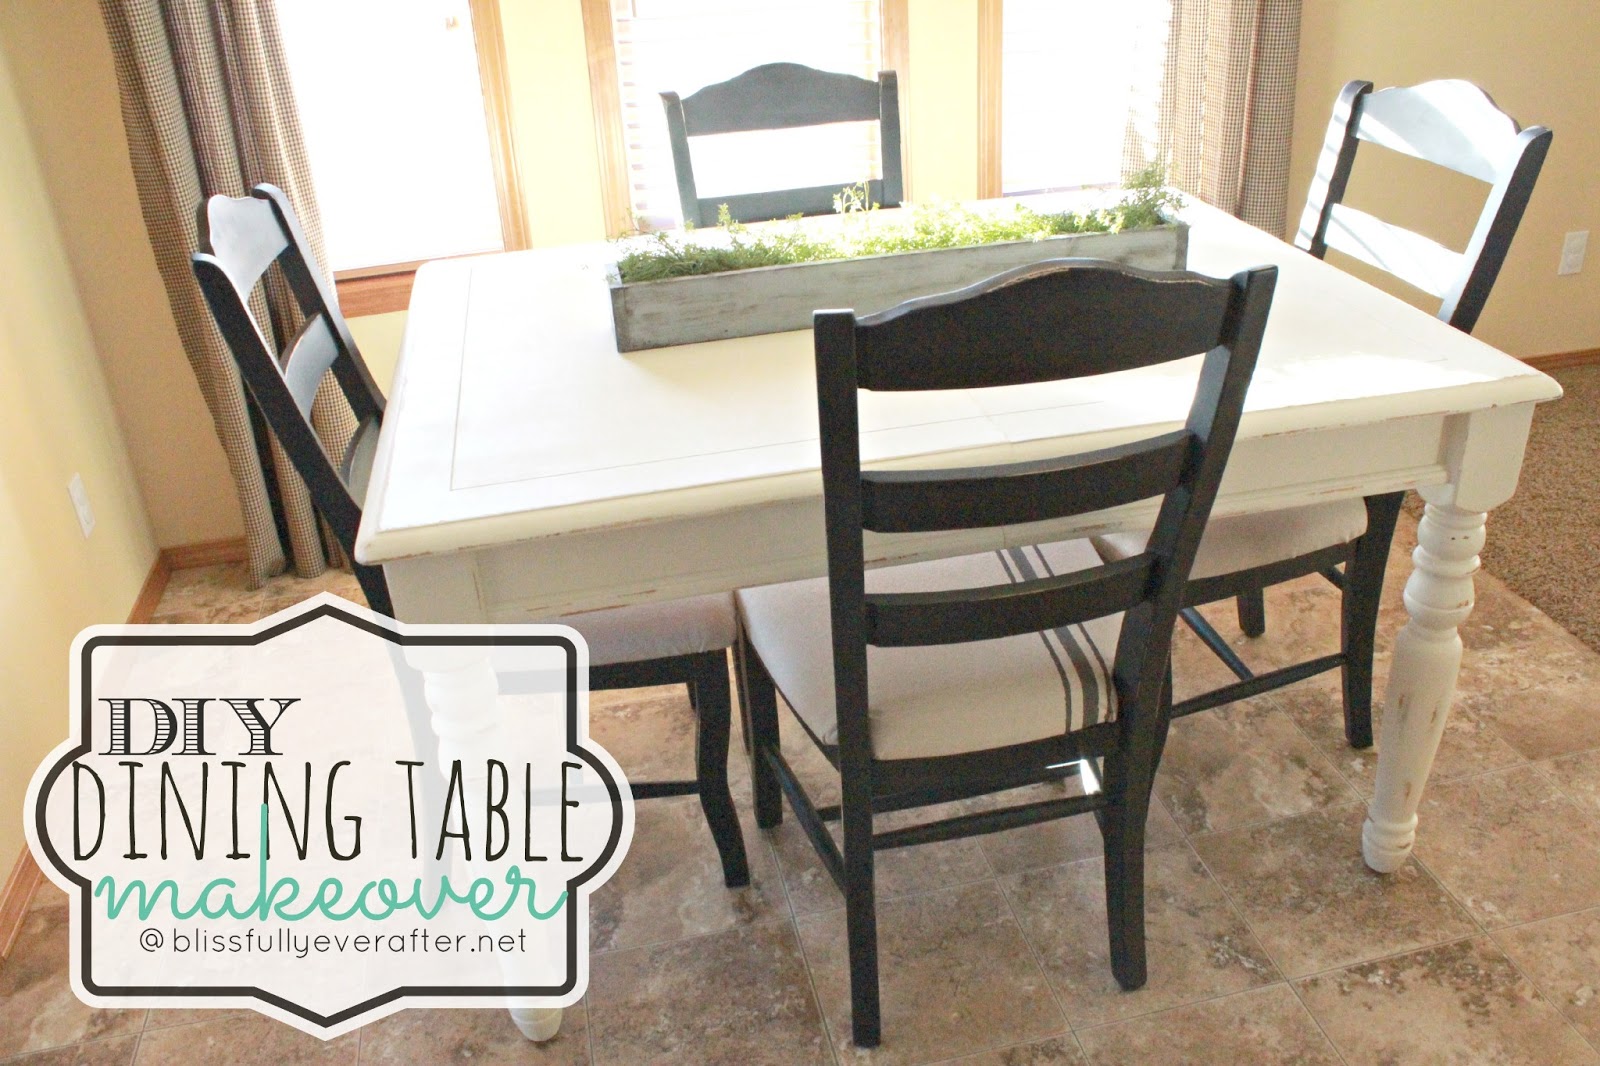 diy dining table ideas photo - 1